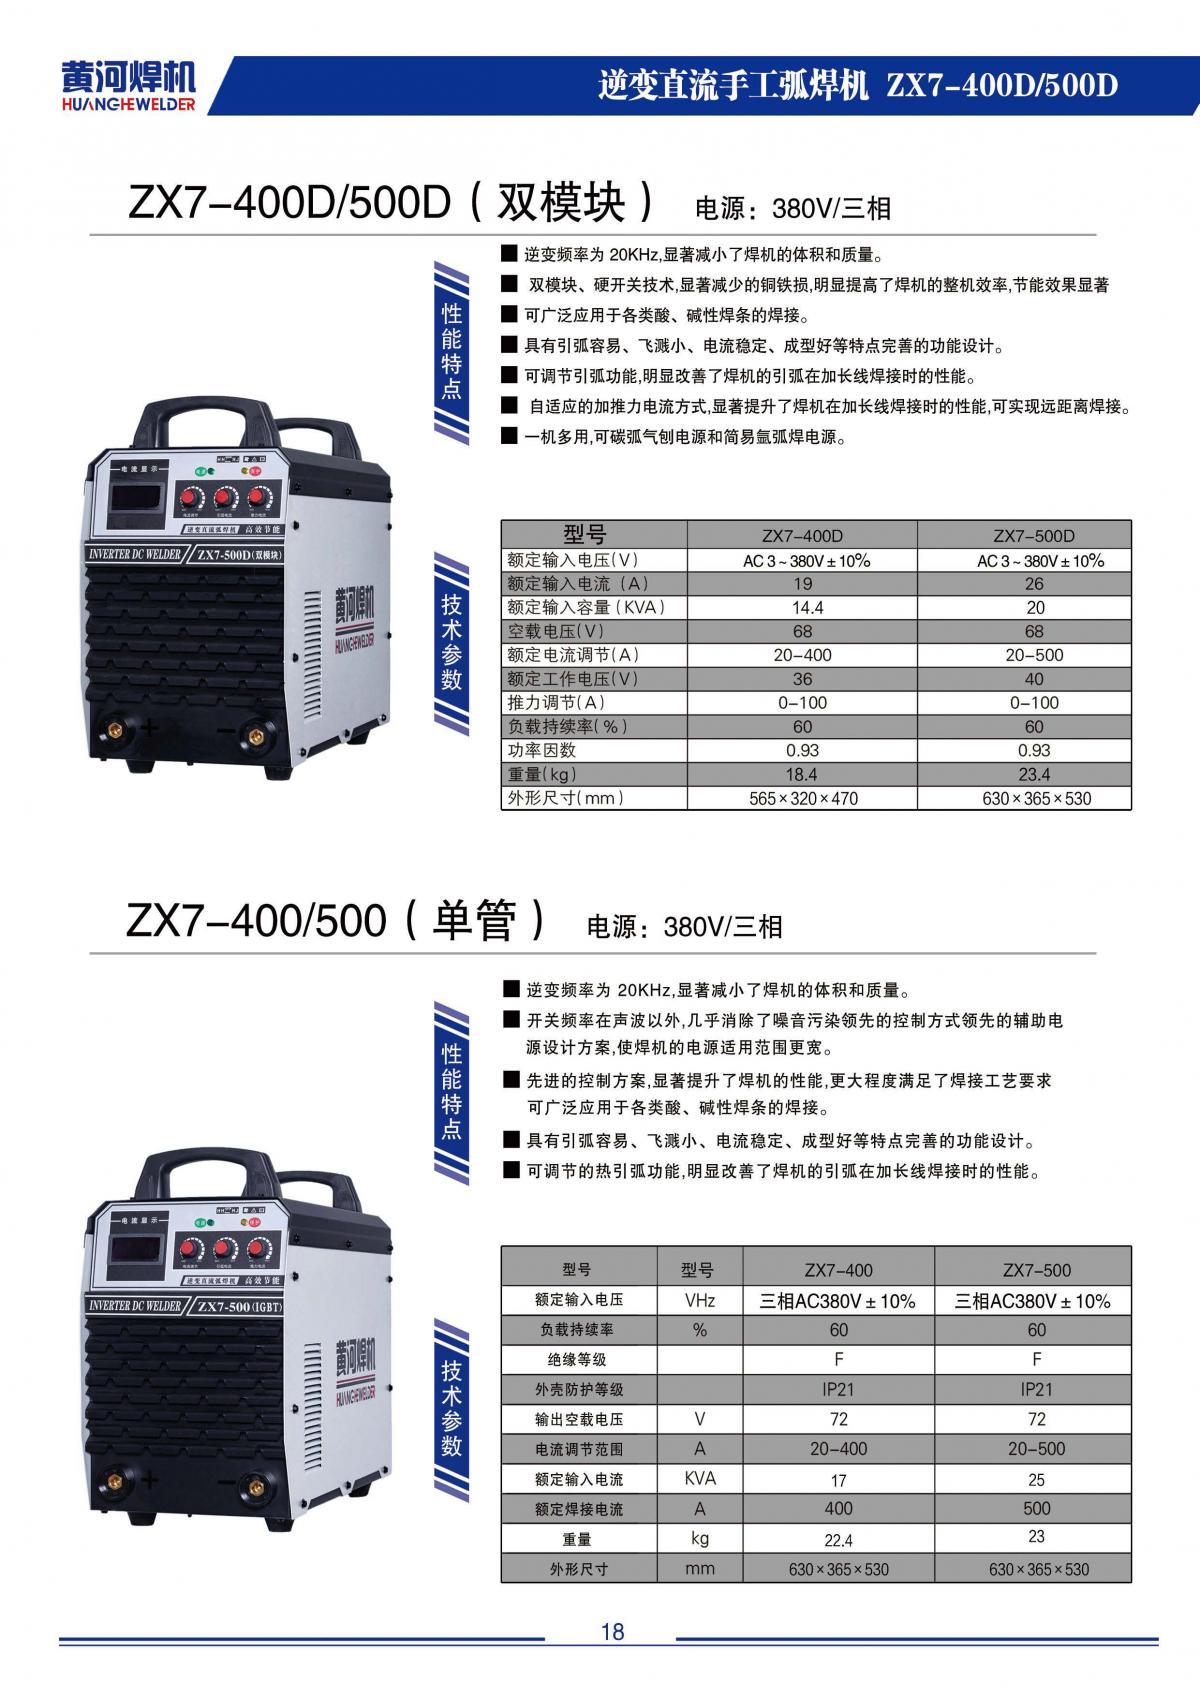 ZX7-400D/500D